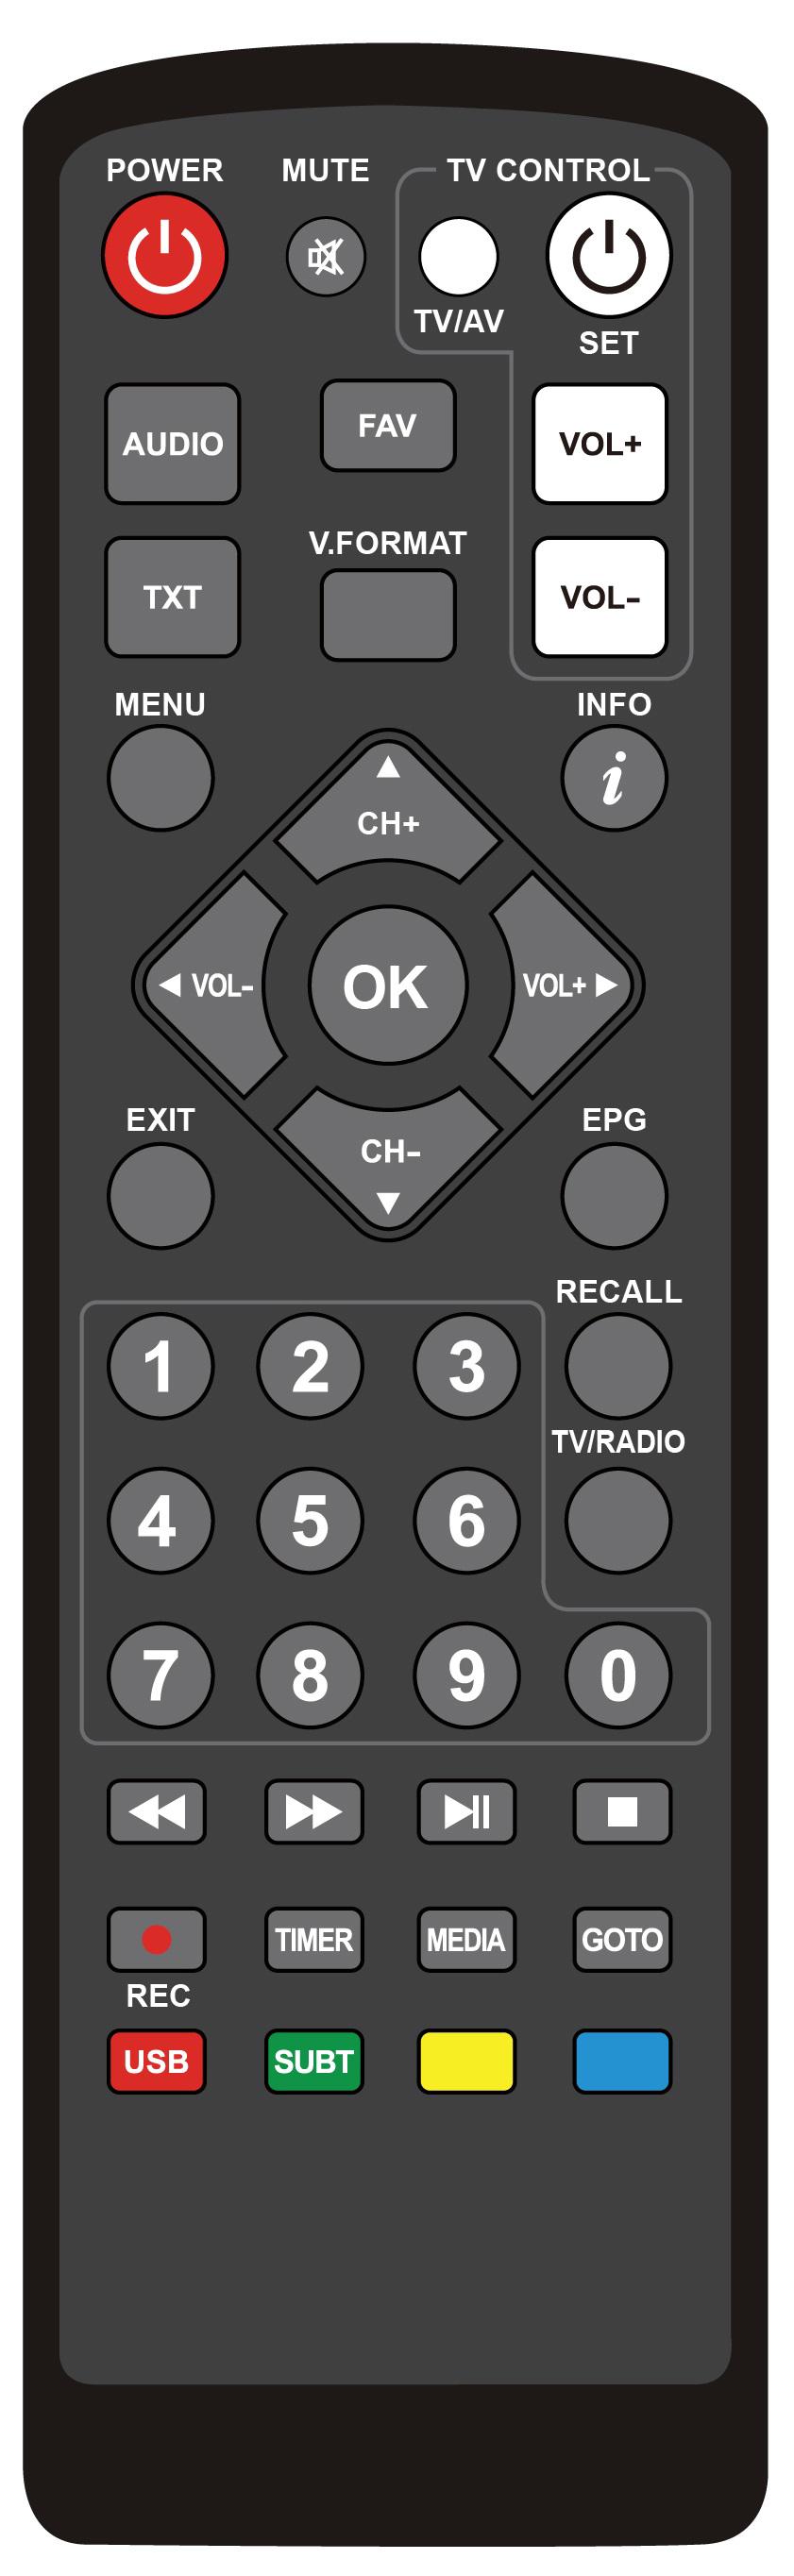 SZYBKI START - Pilot TV CONTROL - przyciski programowalne (samouczące): 1. 2. 3.